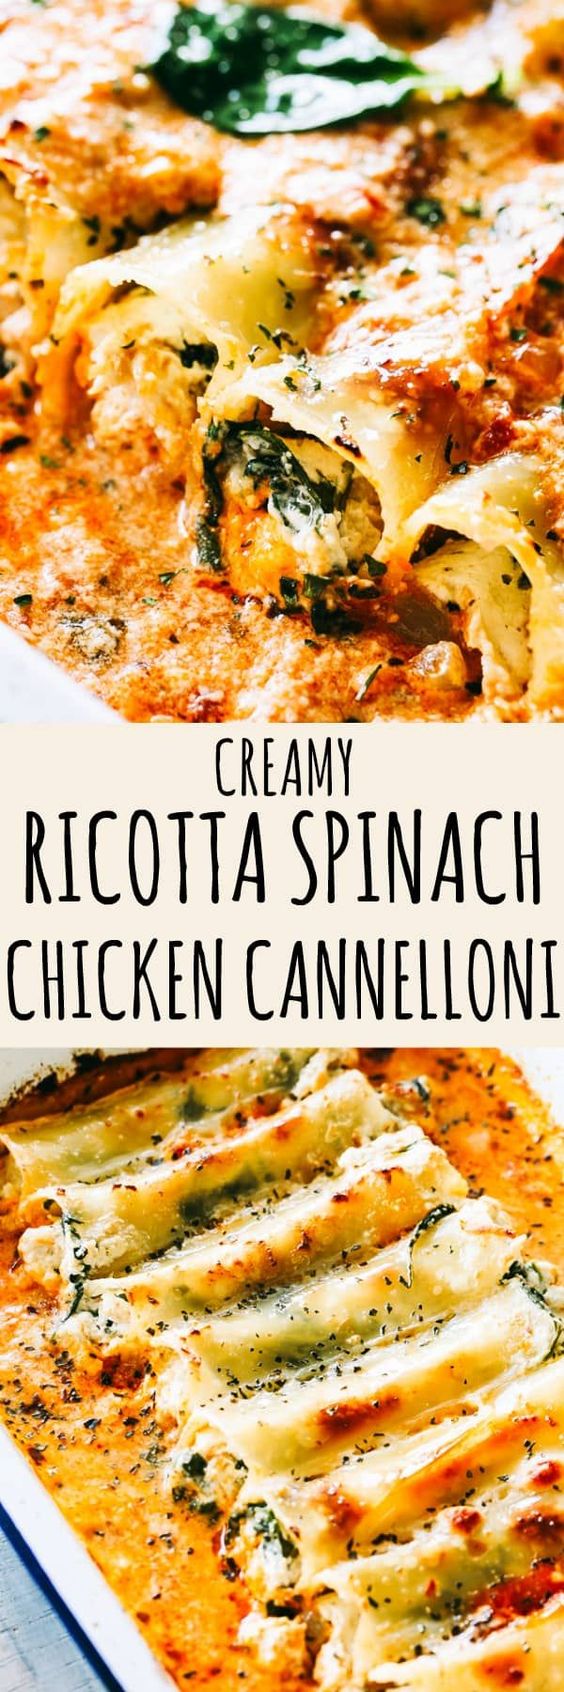 Creamy-Ricotta-Spinach-and-Chicken-Cannelloni